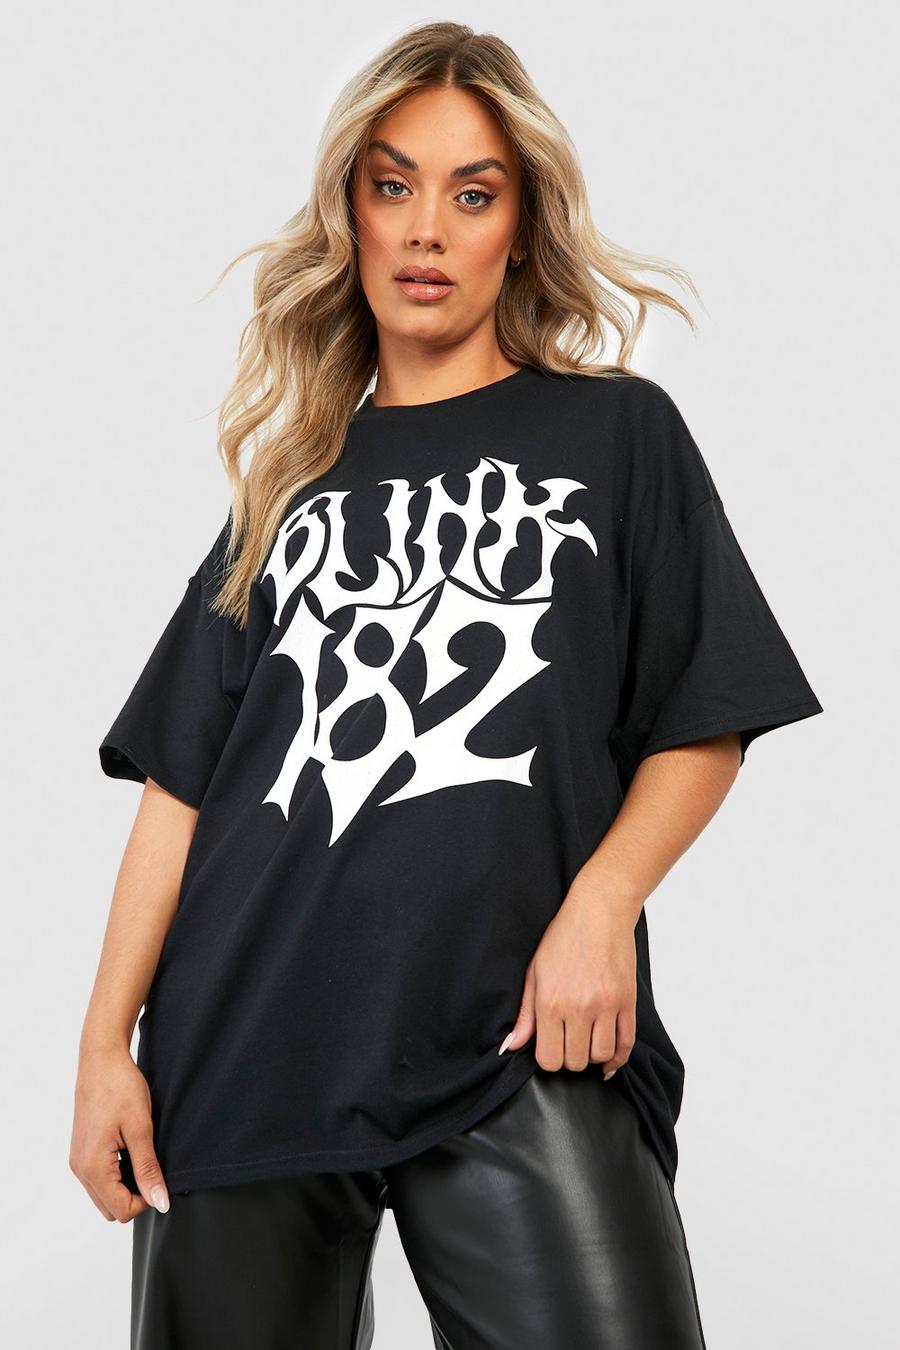 Black noir Plus Oversized Blink 182 License T-shirt image number 1